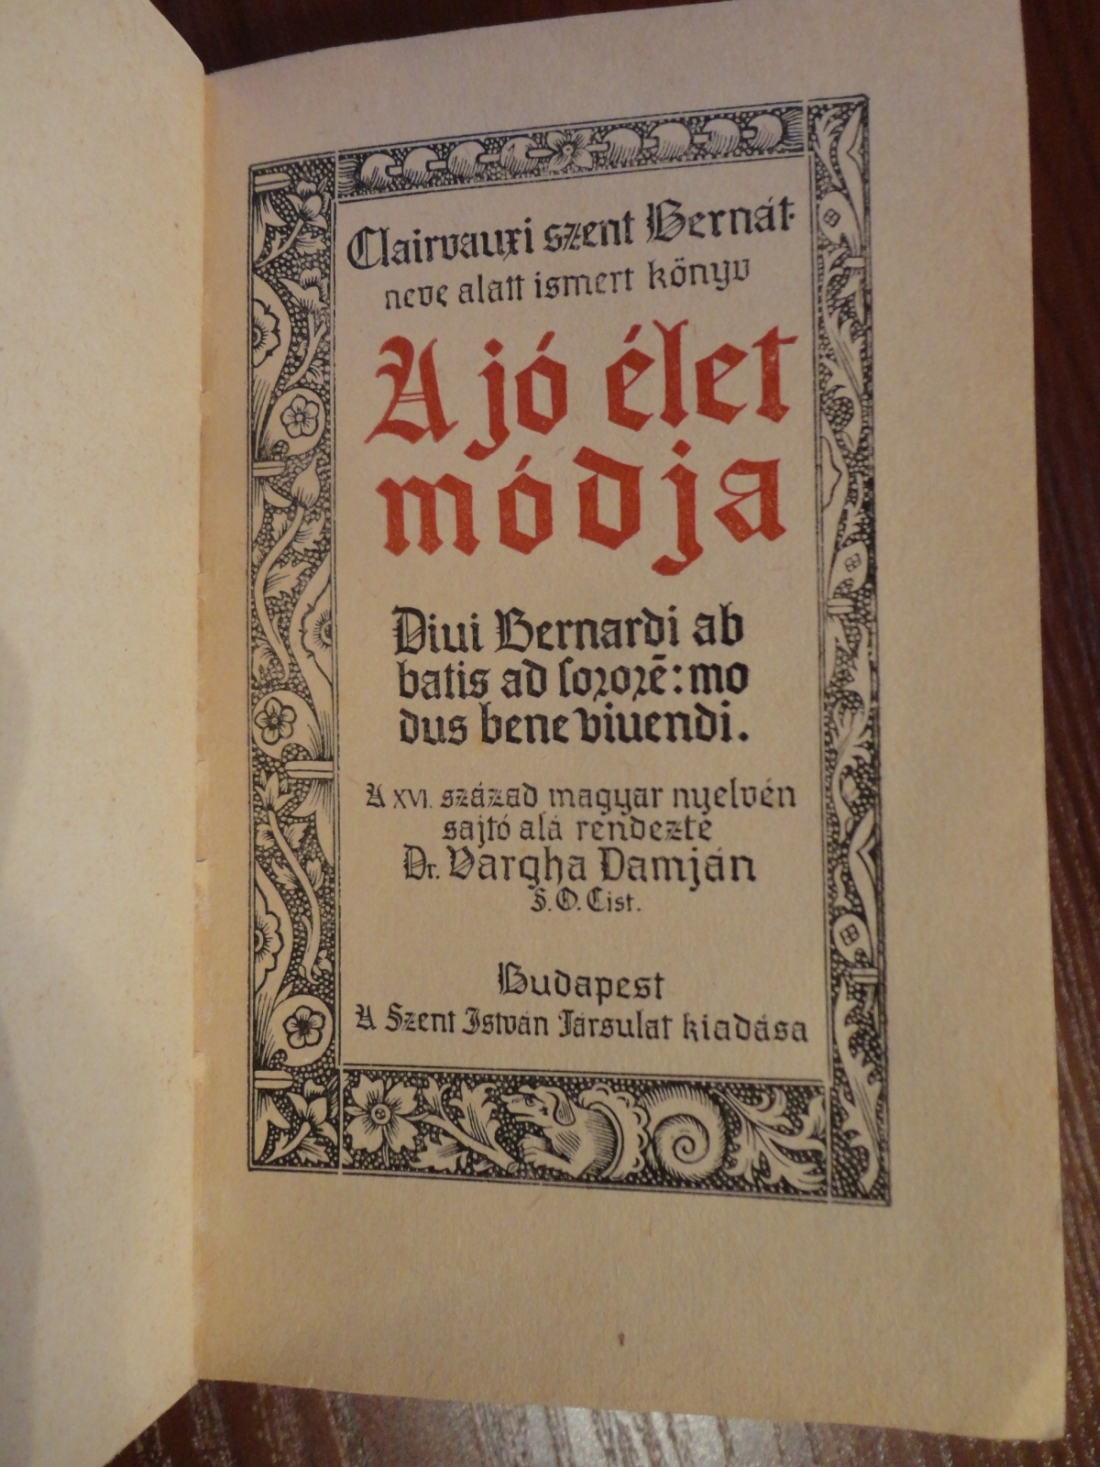 Szent Bernát A jó élet módja c. könyv belső címlapja (Szent István Társulat, 1943.)